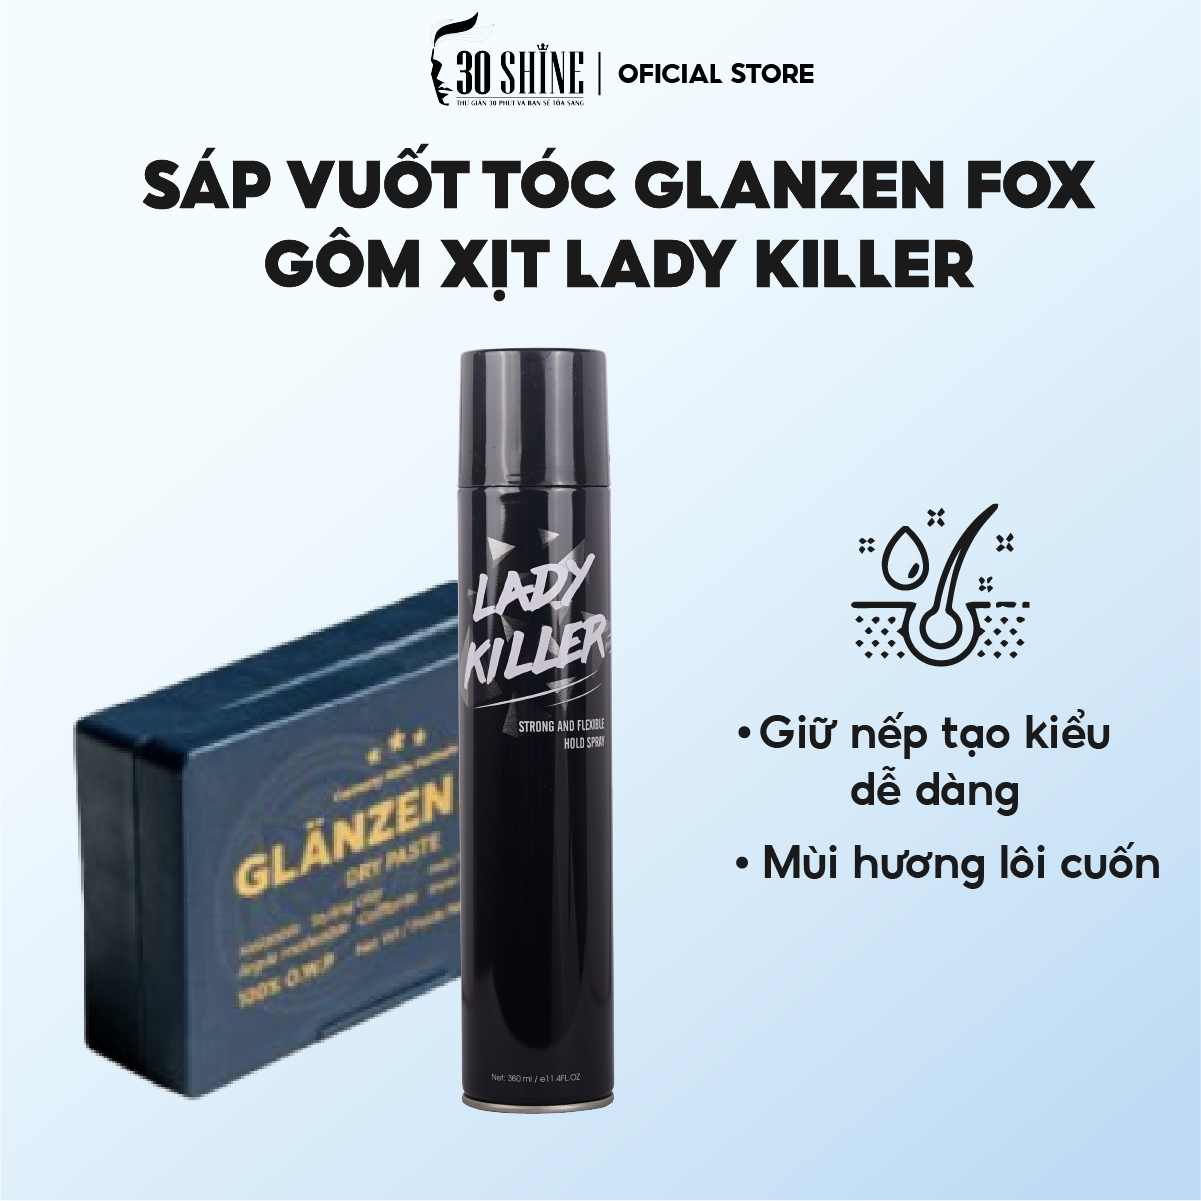 Sáp vuốt tóc nam Glanzen Fox 30Shine chính hãng 56g giữ nếp linh hoạt bổ  sung độ ẩm tự nhiên  Shopee Việt Nam